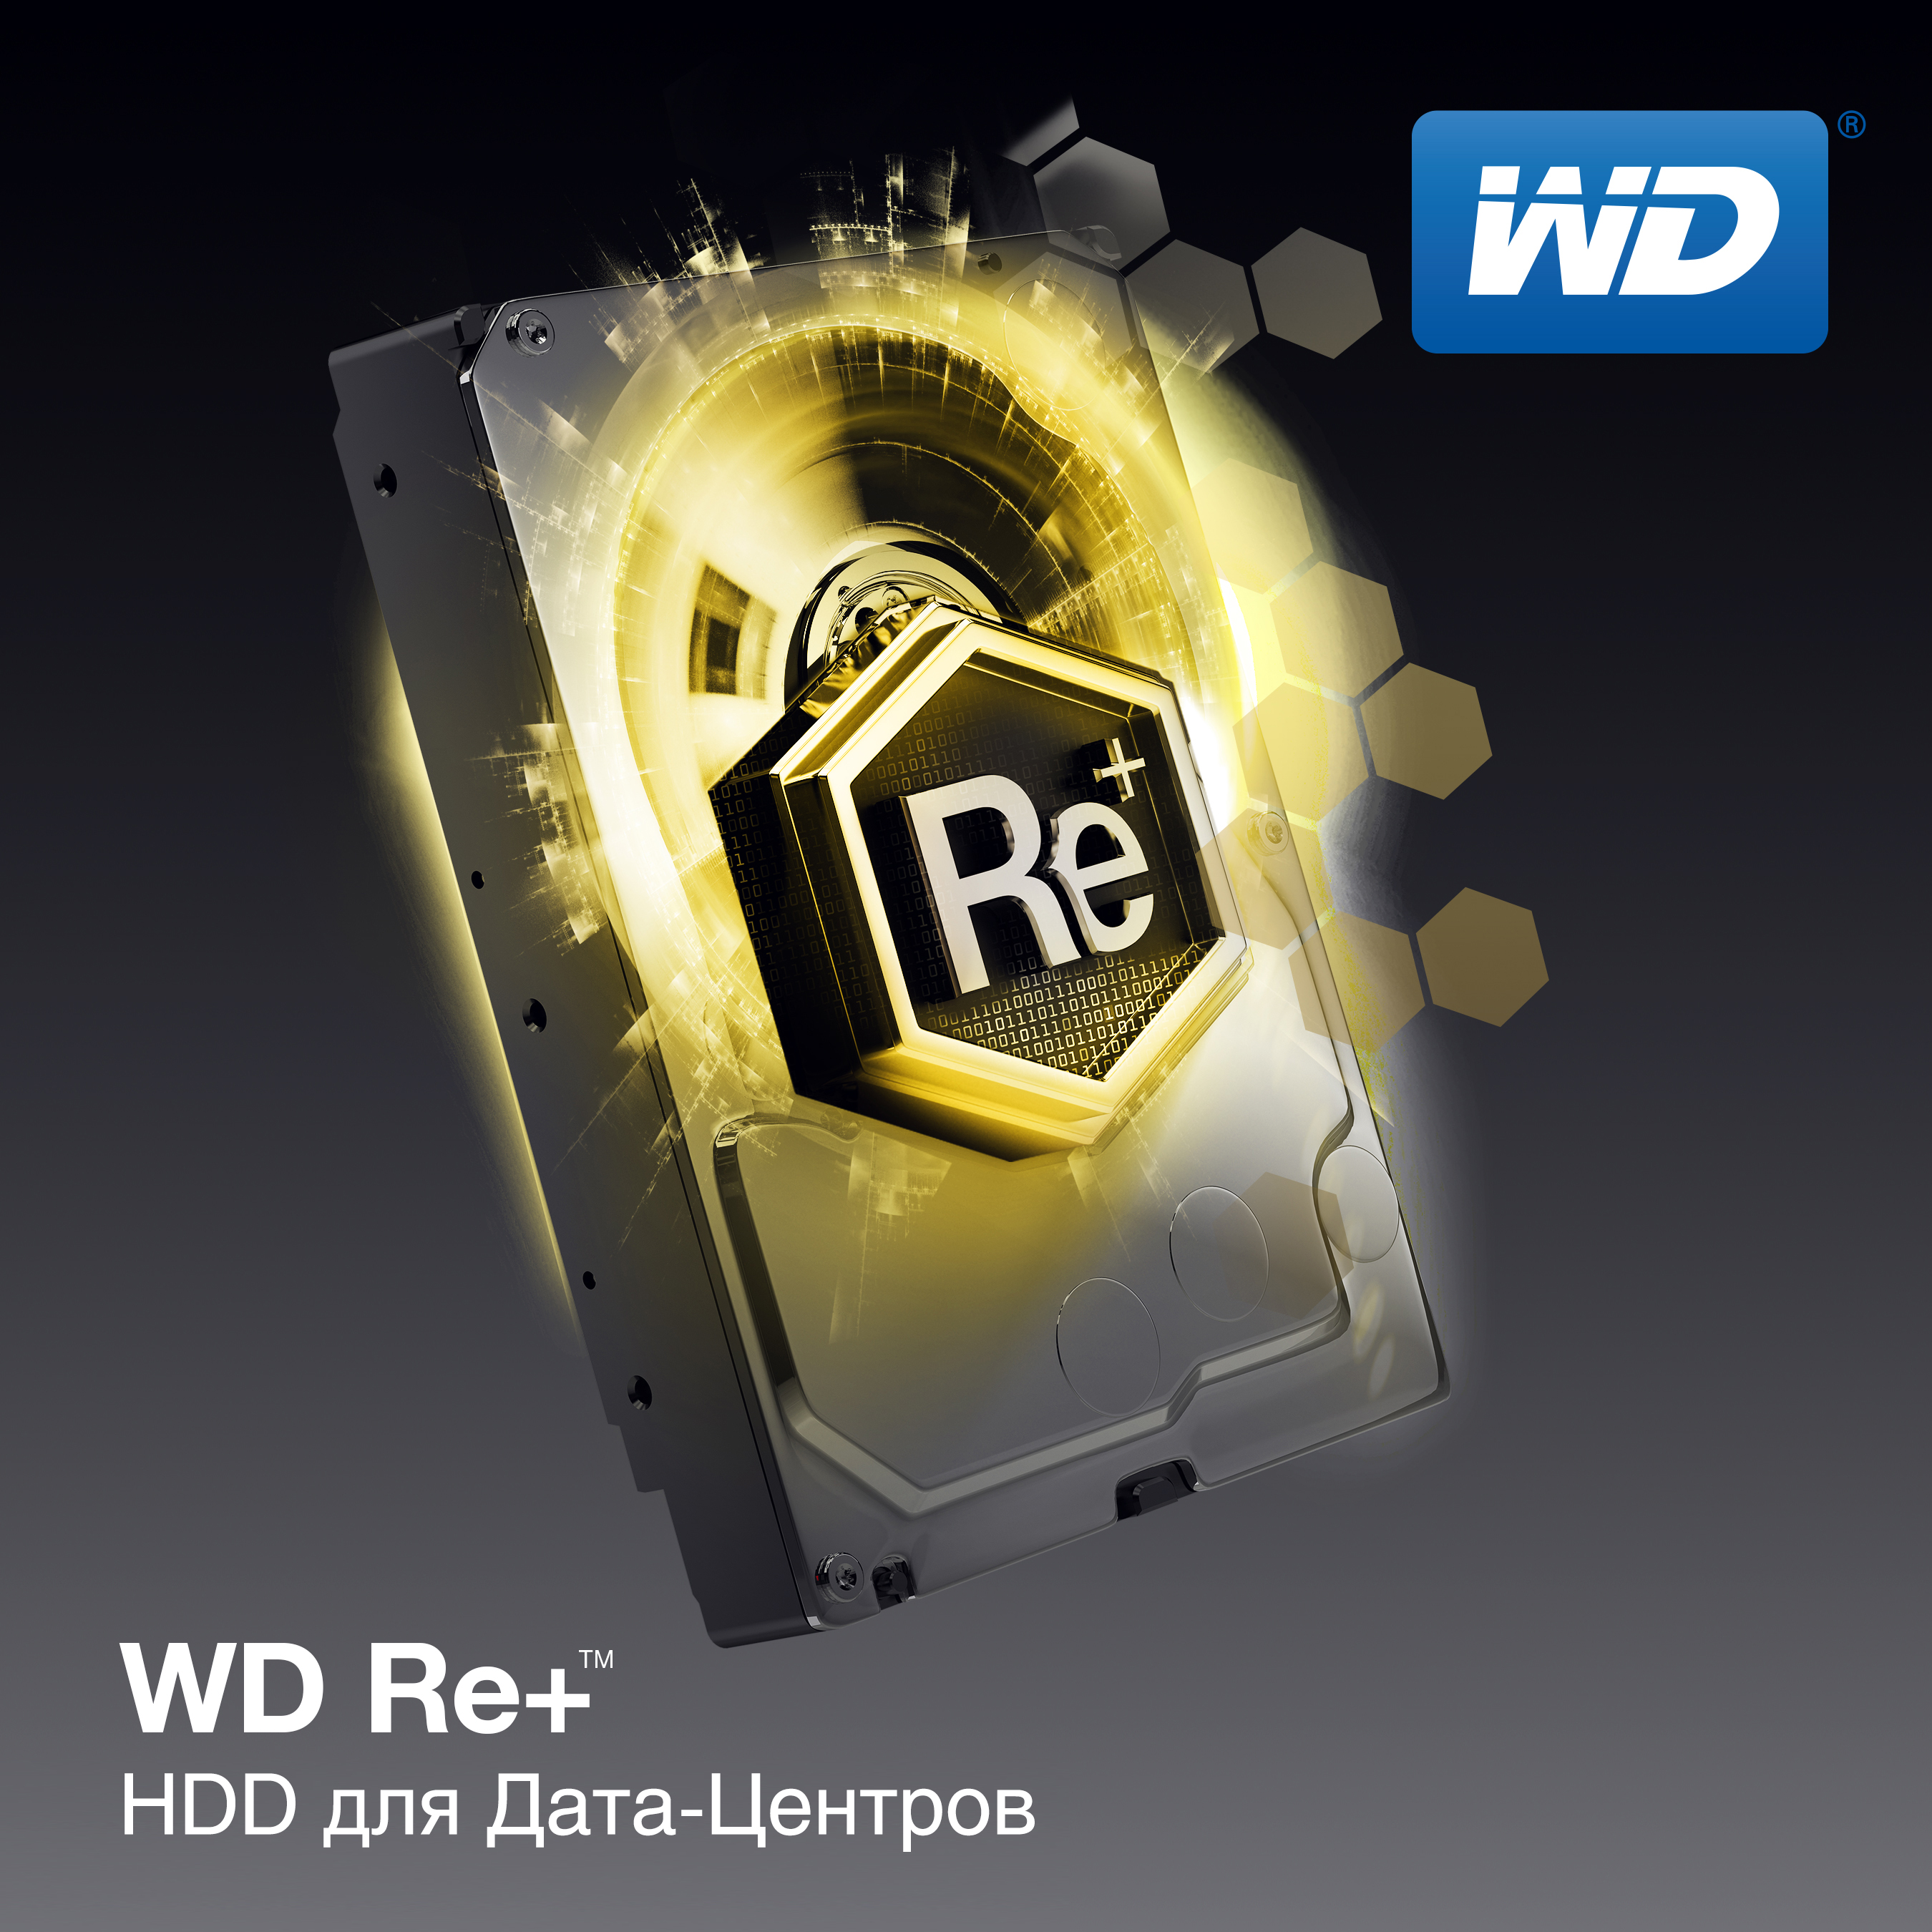 WD Datacenter PRN graphic RU